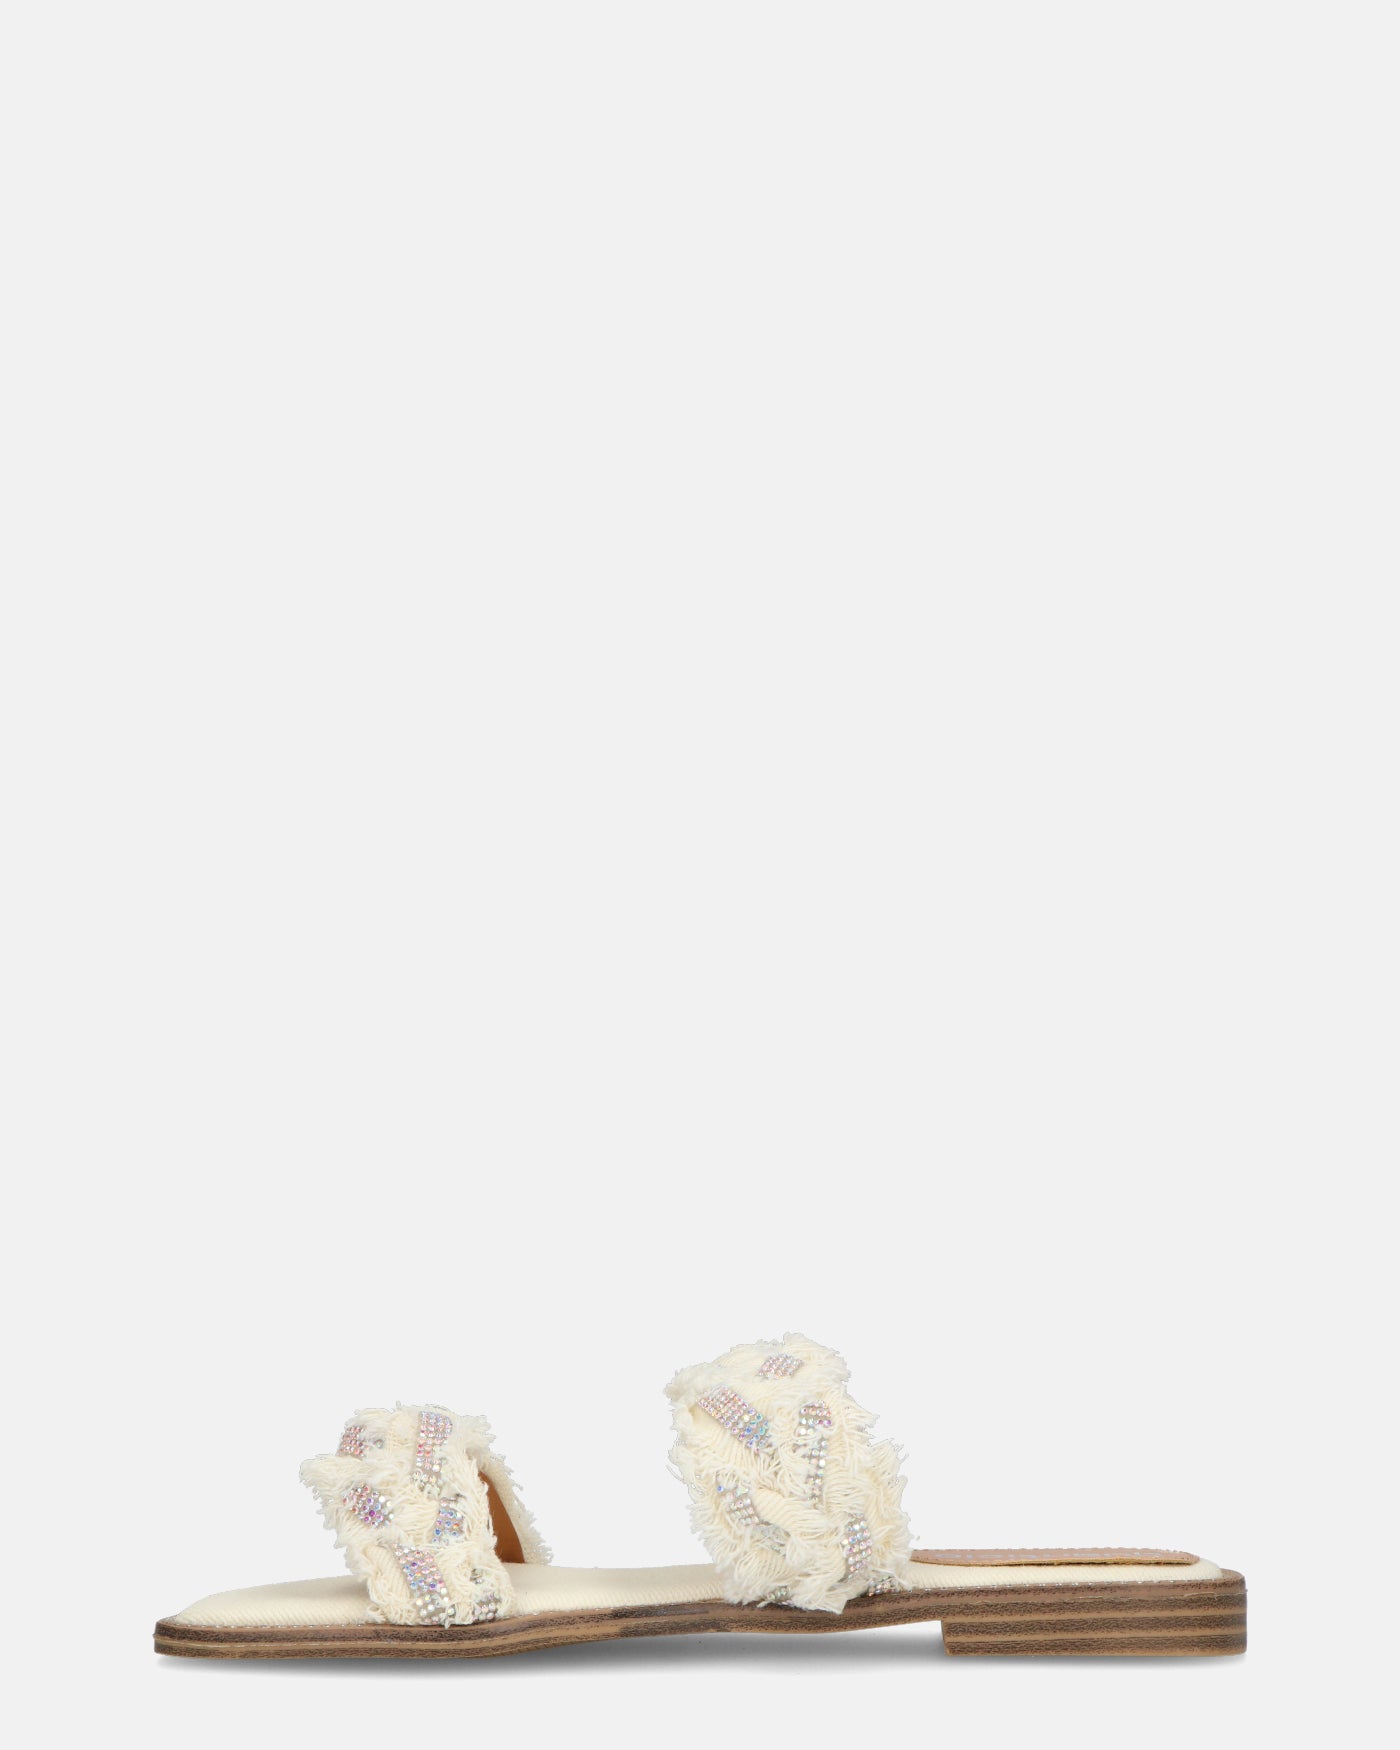 KALI - sandales en tissu beige clair avec pierres précieuses